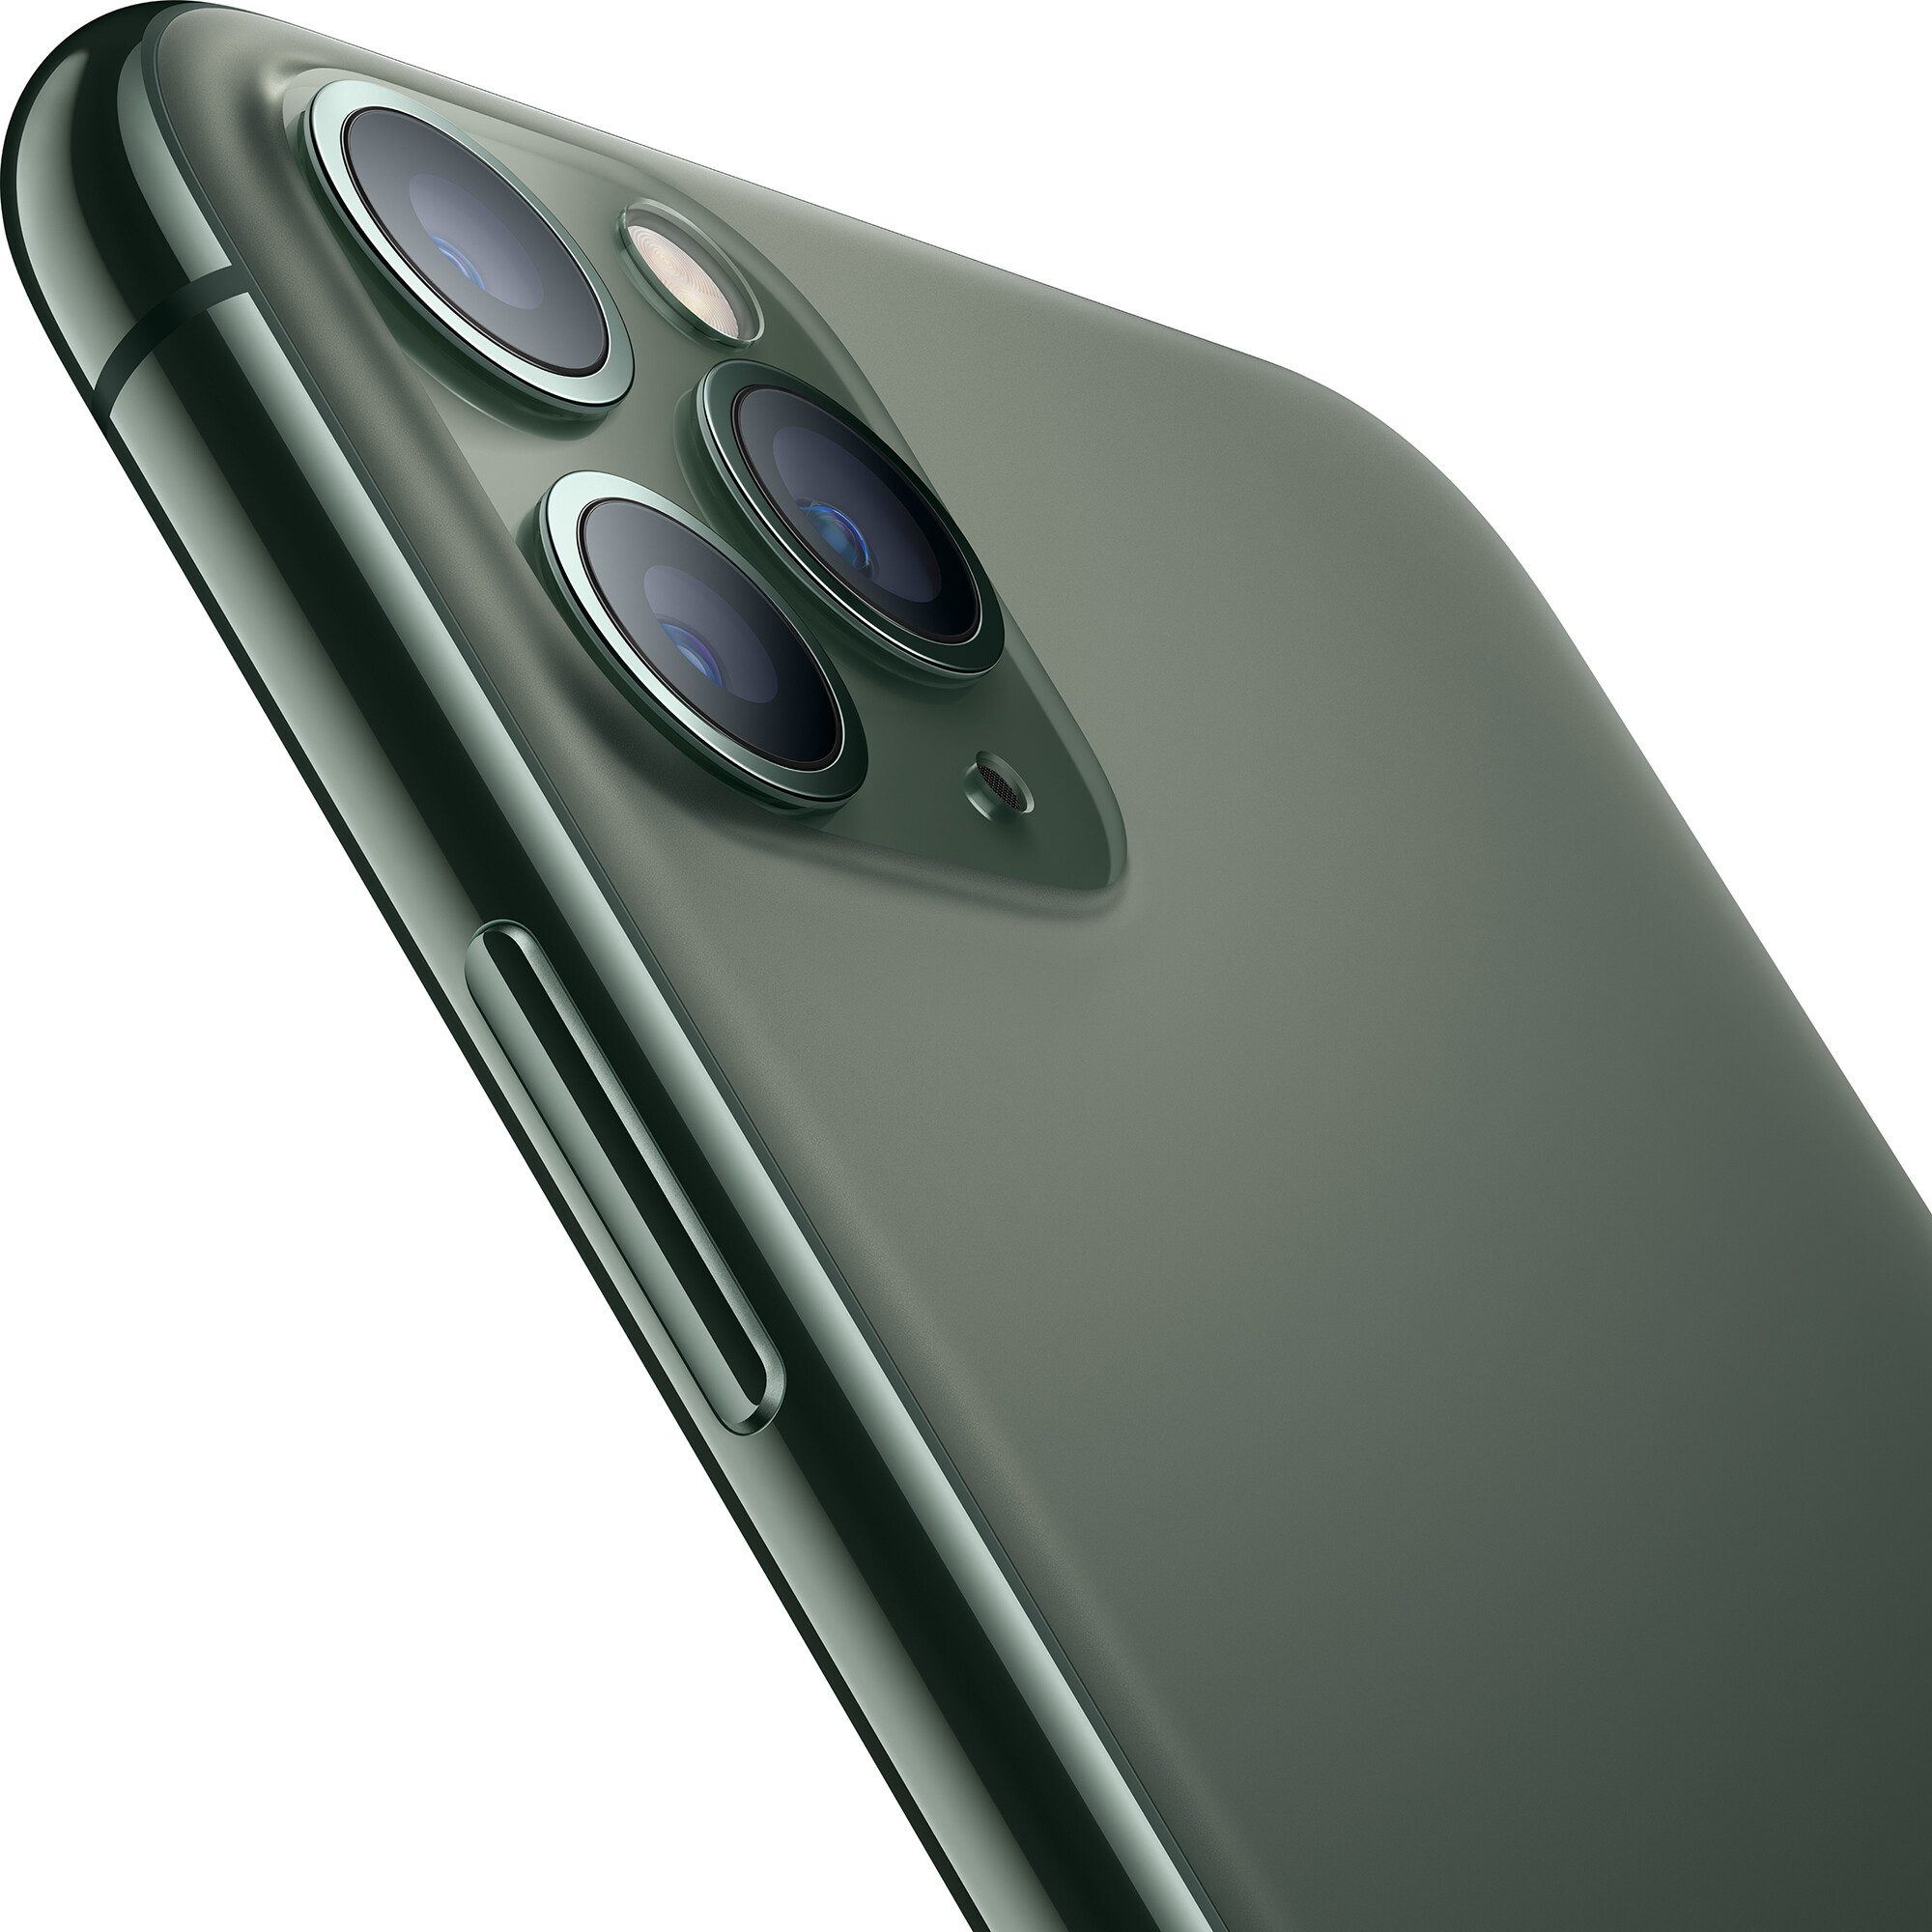  Apple iPhone 11 Pro Max Dual SIM 256GB Midnight Green